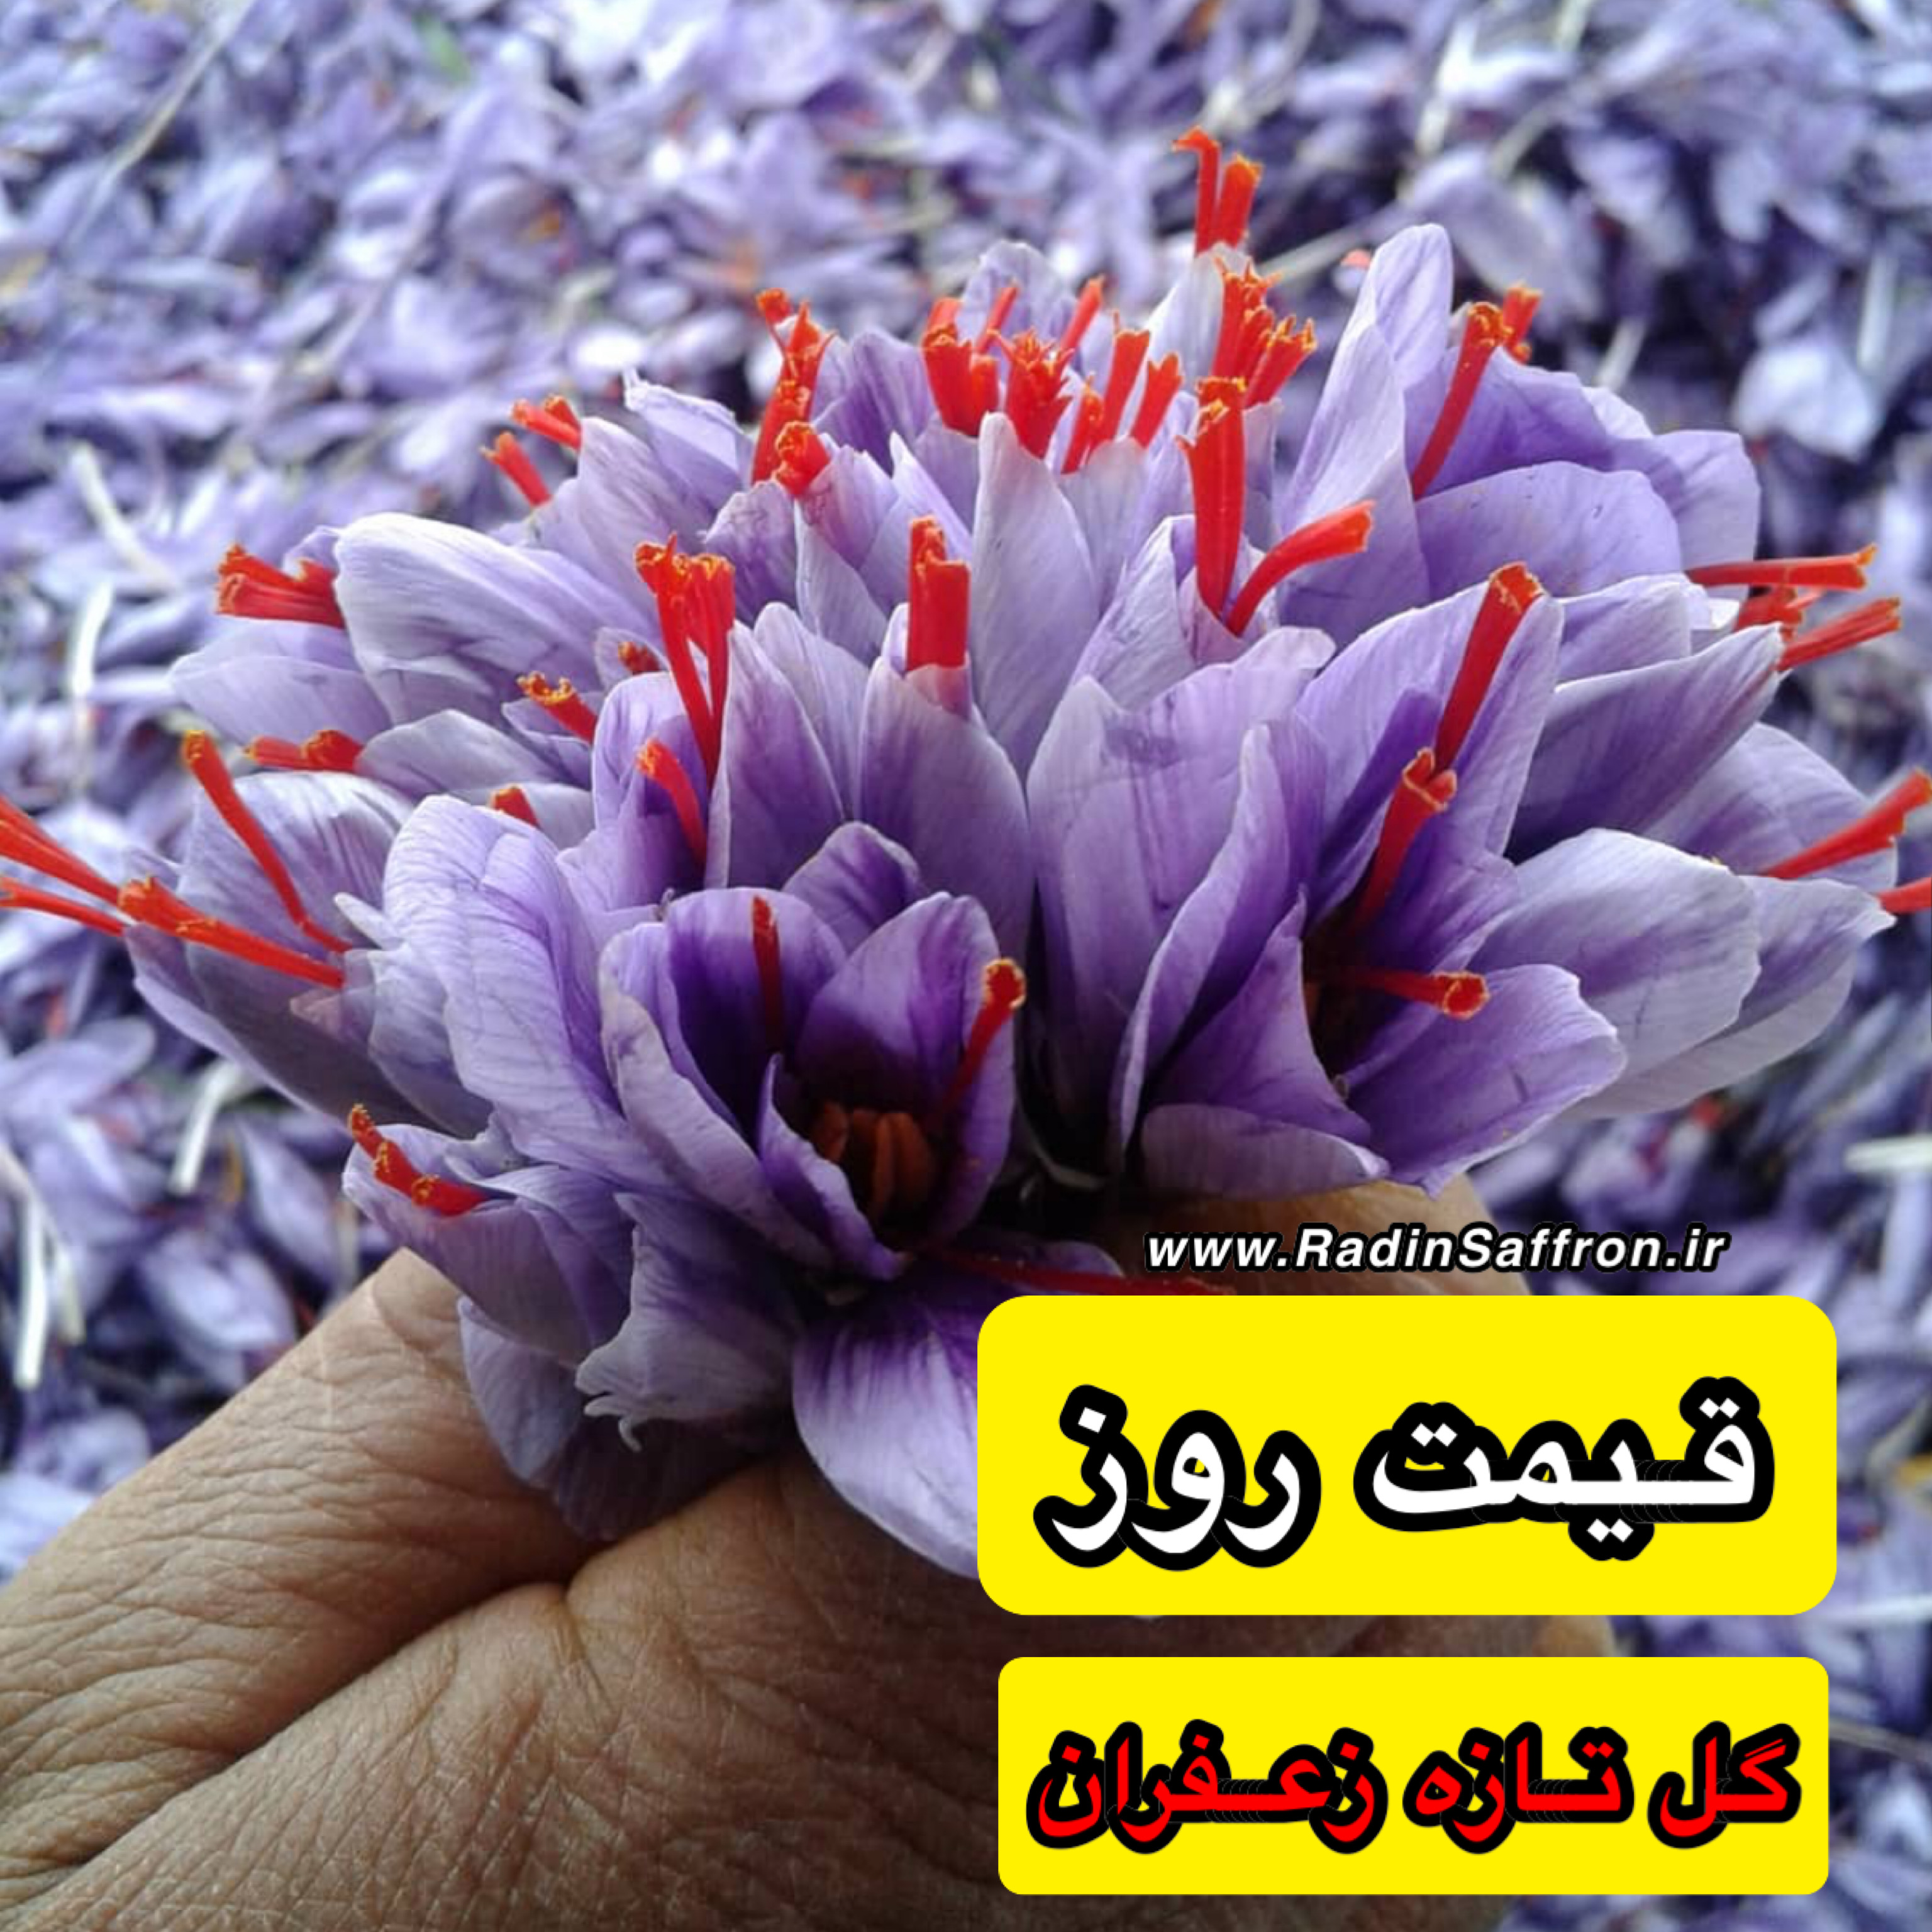 قیمت روز گل تازه زعفران | روز چهارشنبه ۳۰ مهرماه ۹۹